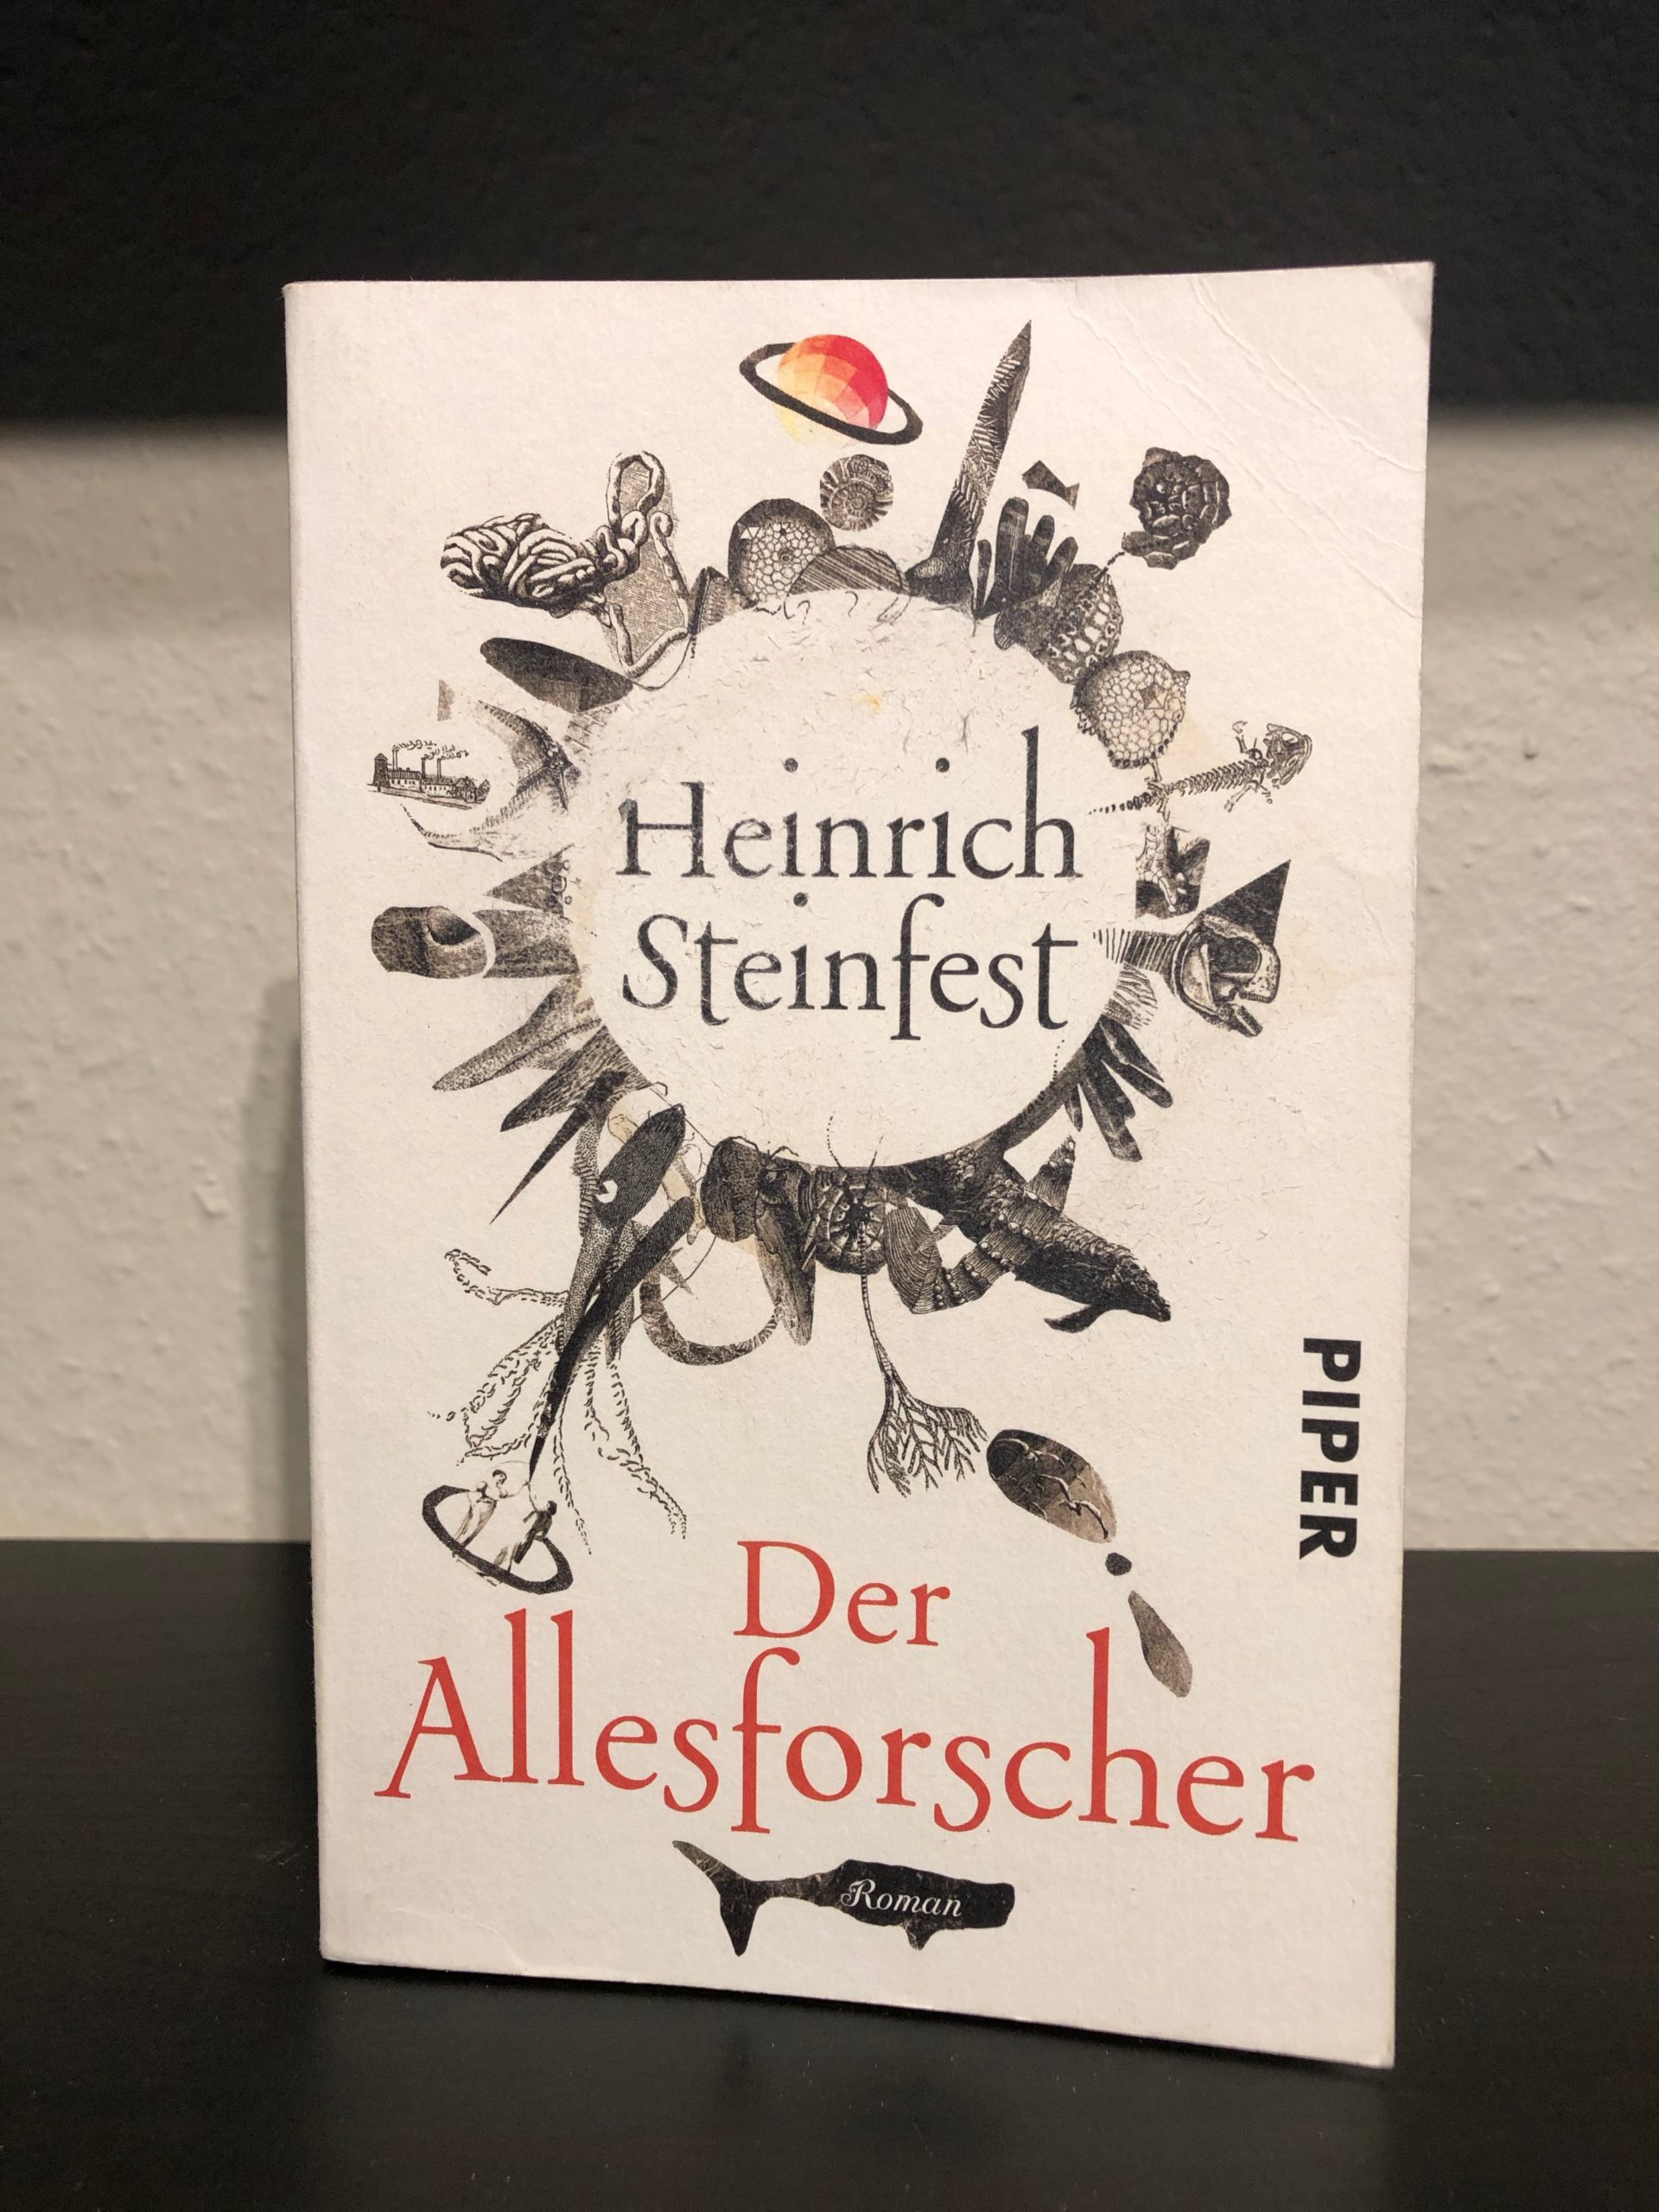 Der Allesforscher - Heinrich Steinfest main image